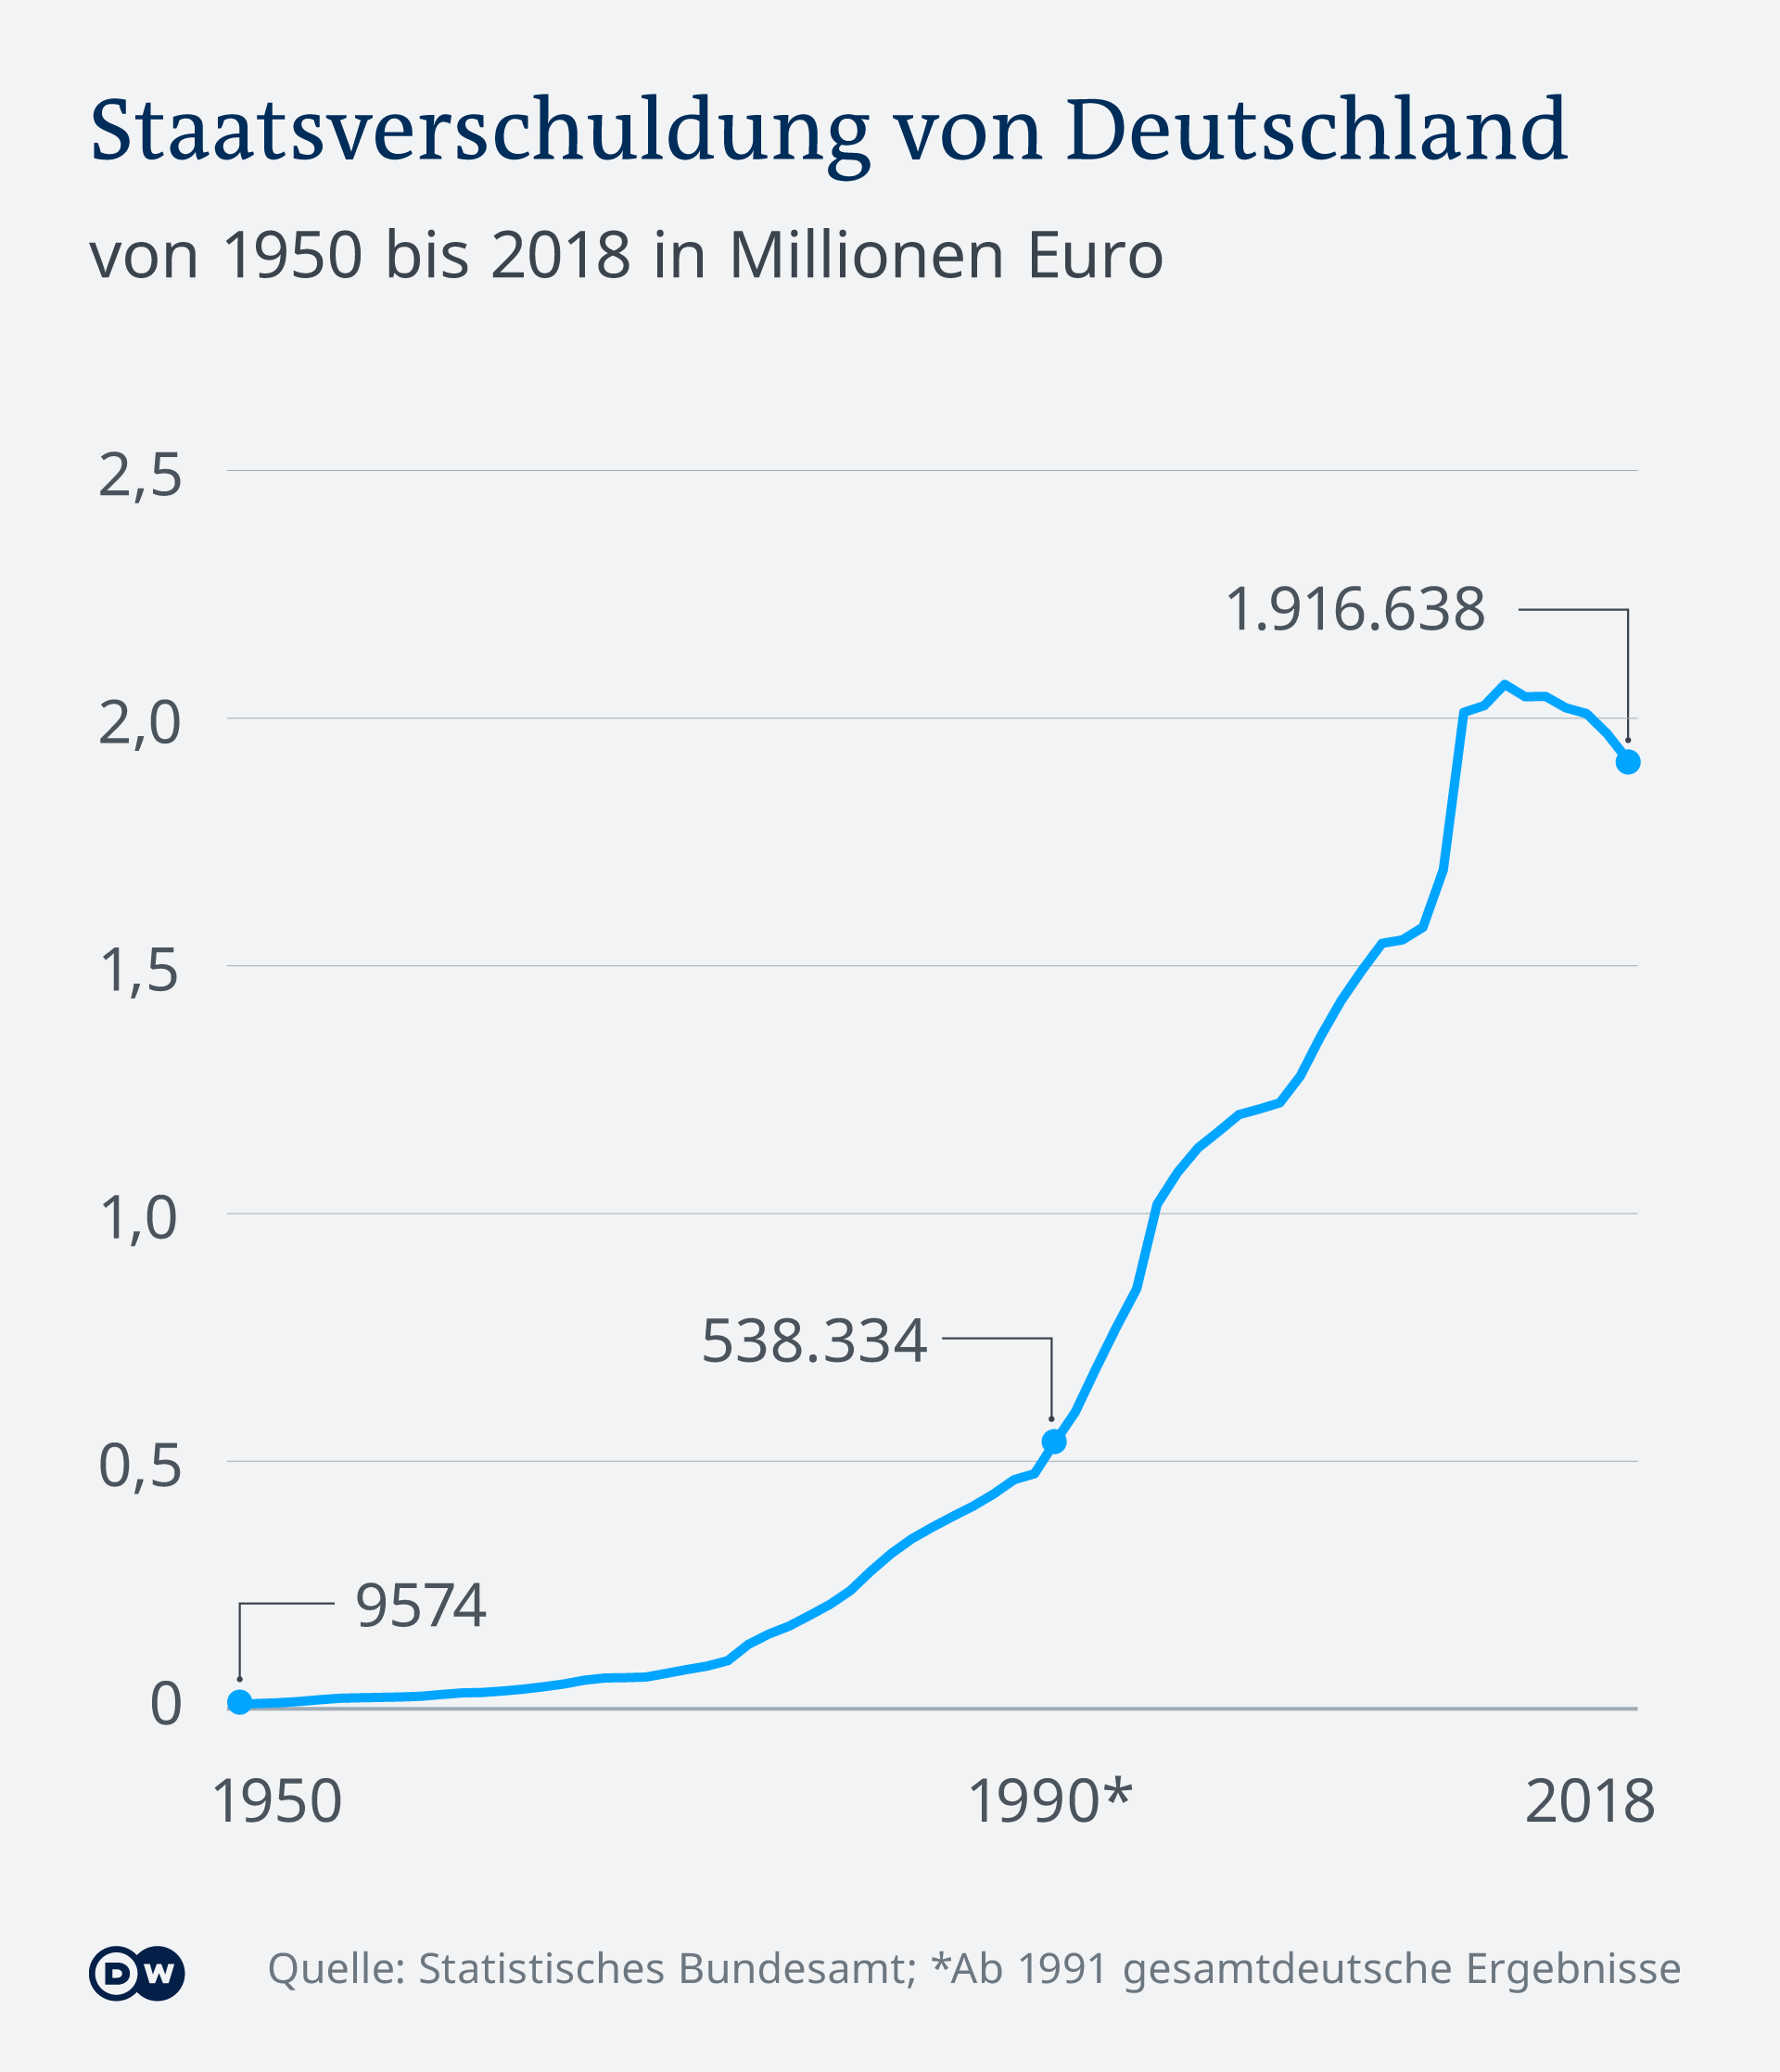 Državni dug Njemačke od 1950. do 2018.